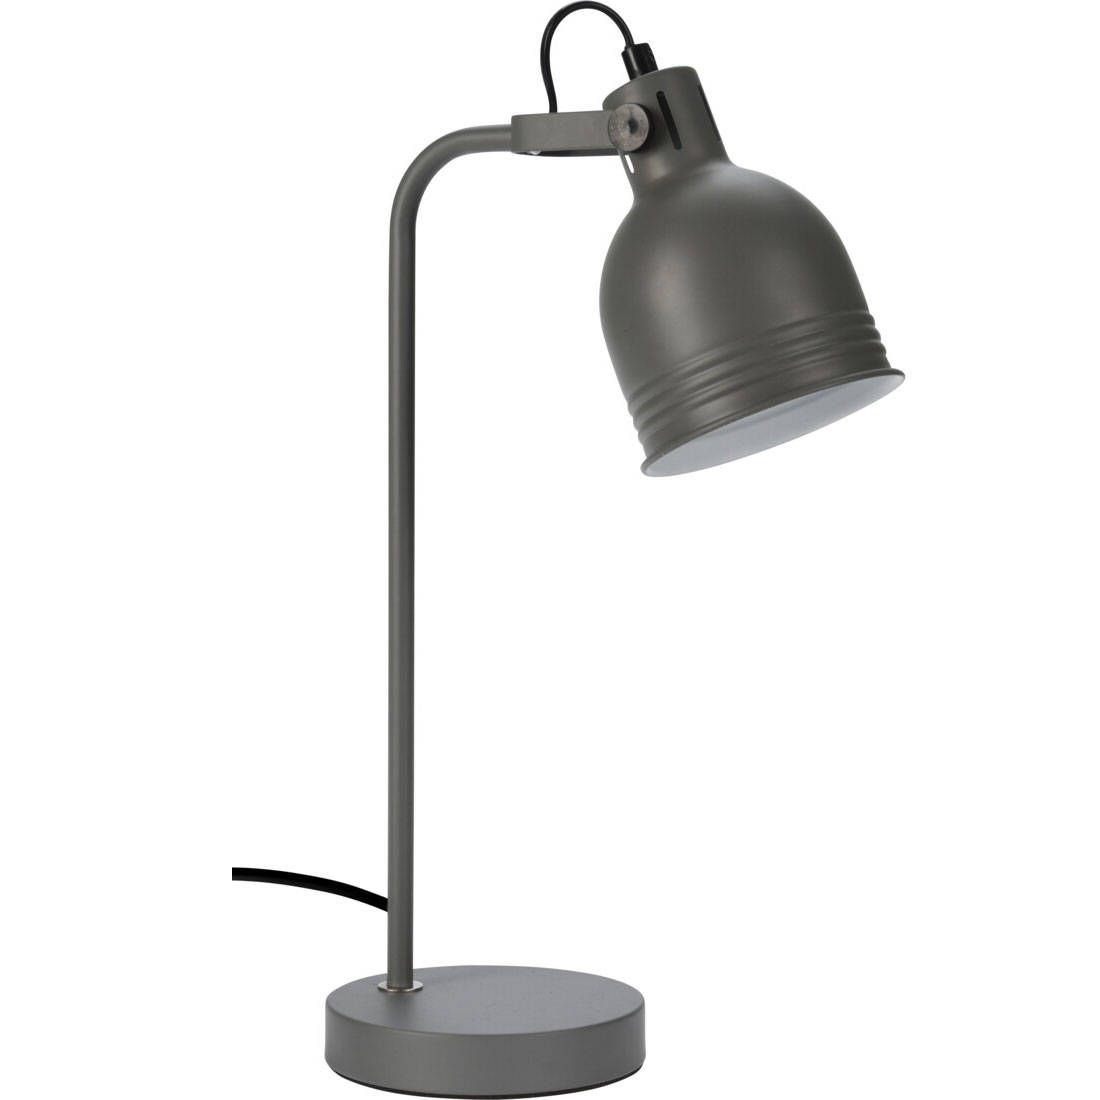 Home Styling Collection Stolní lampa v loftovým stylu, šedý, výška 42 cm - EDAXO.CZ s.r.o.